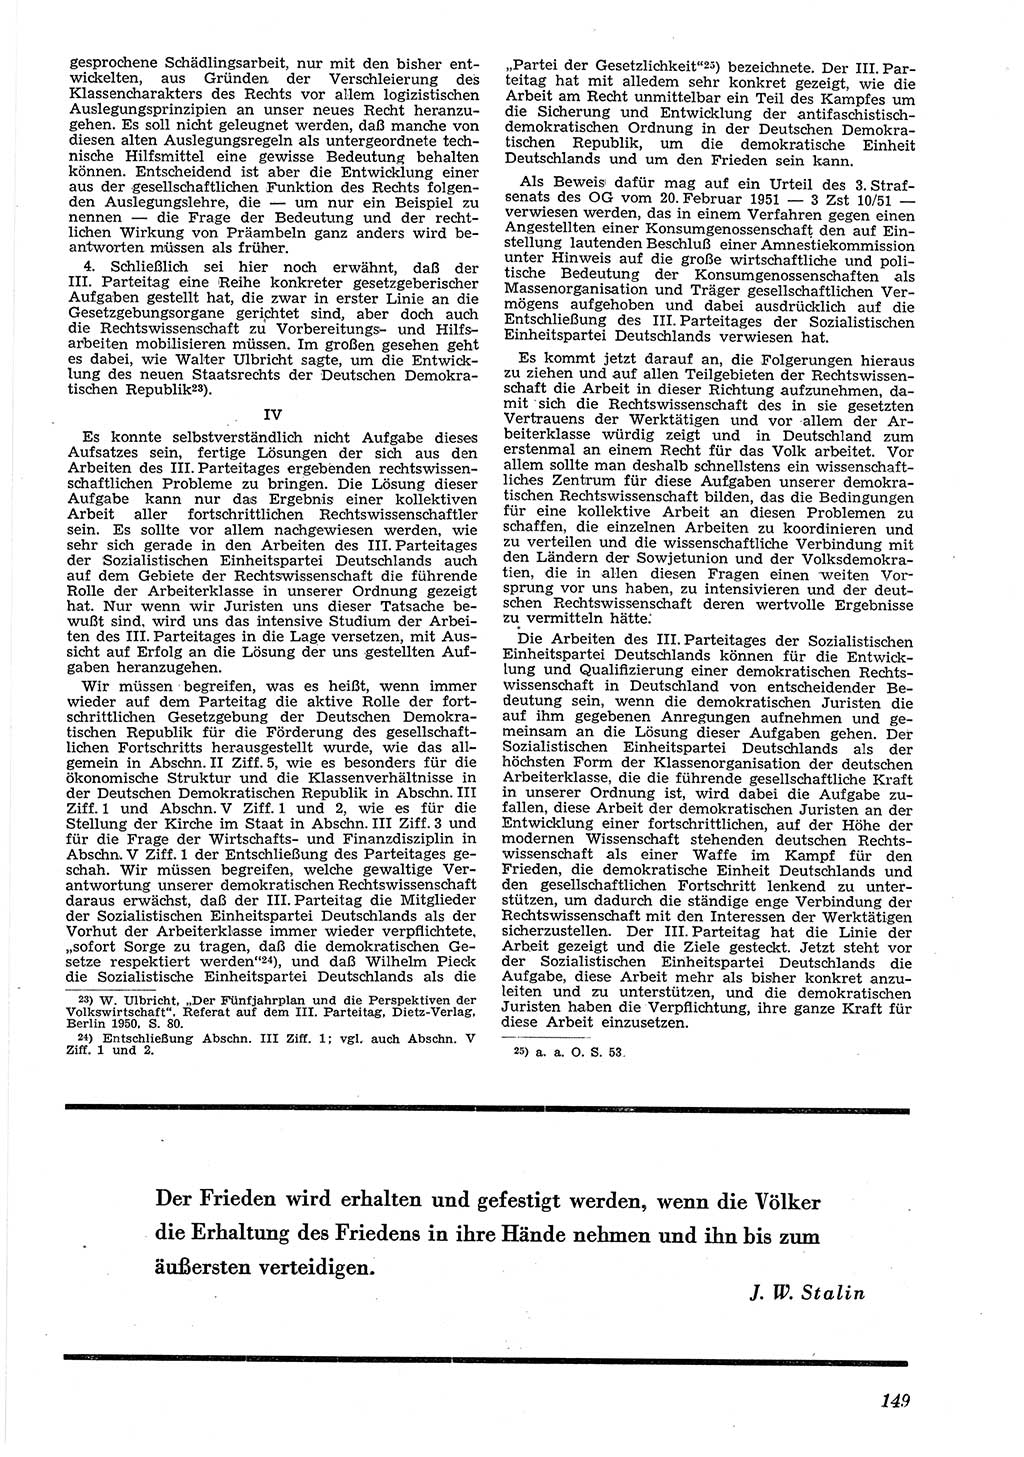 Neue Justiz (NJ), Zeitschrift für Recht und Rechtswissenschaft [Deutsche Demokratische Republik (DDR)], 5. Jahrgang 1951, Seite 149 (NJ DDR 1951, S. 149)